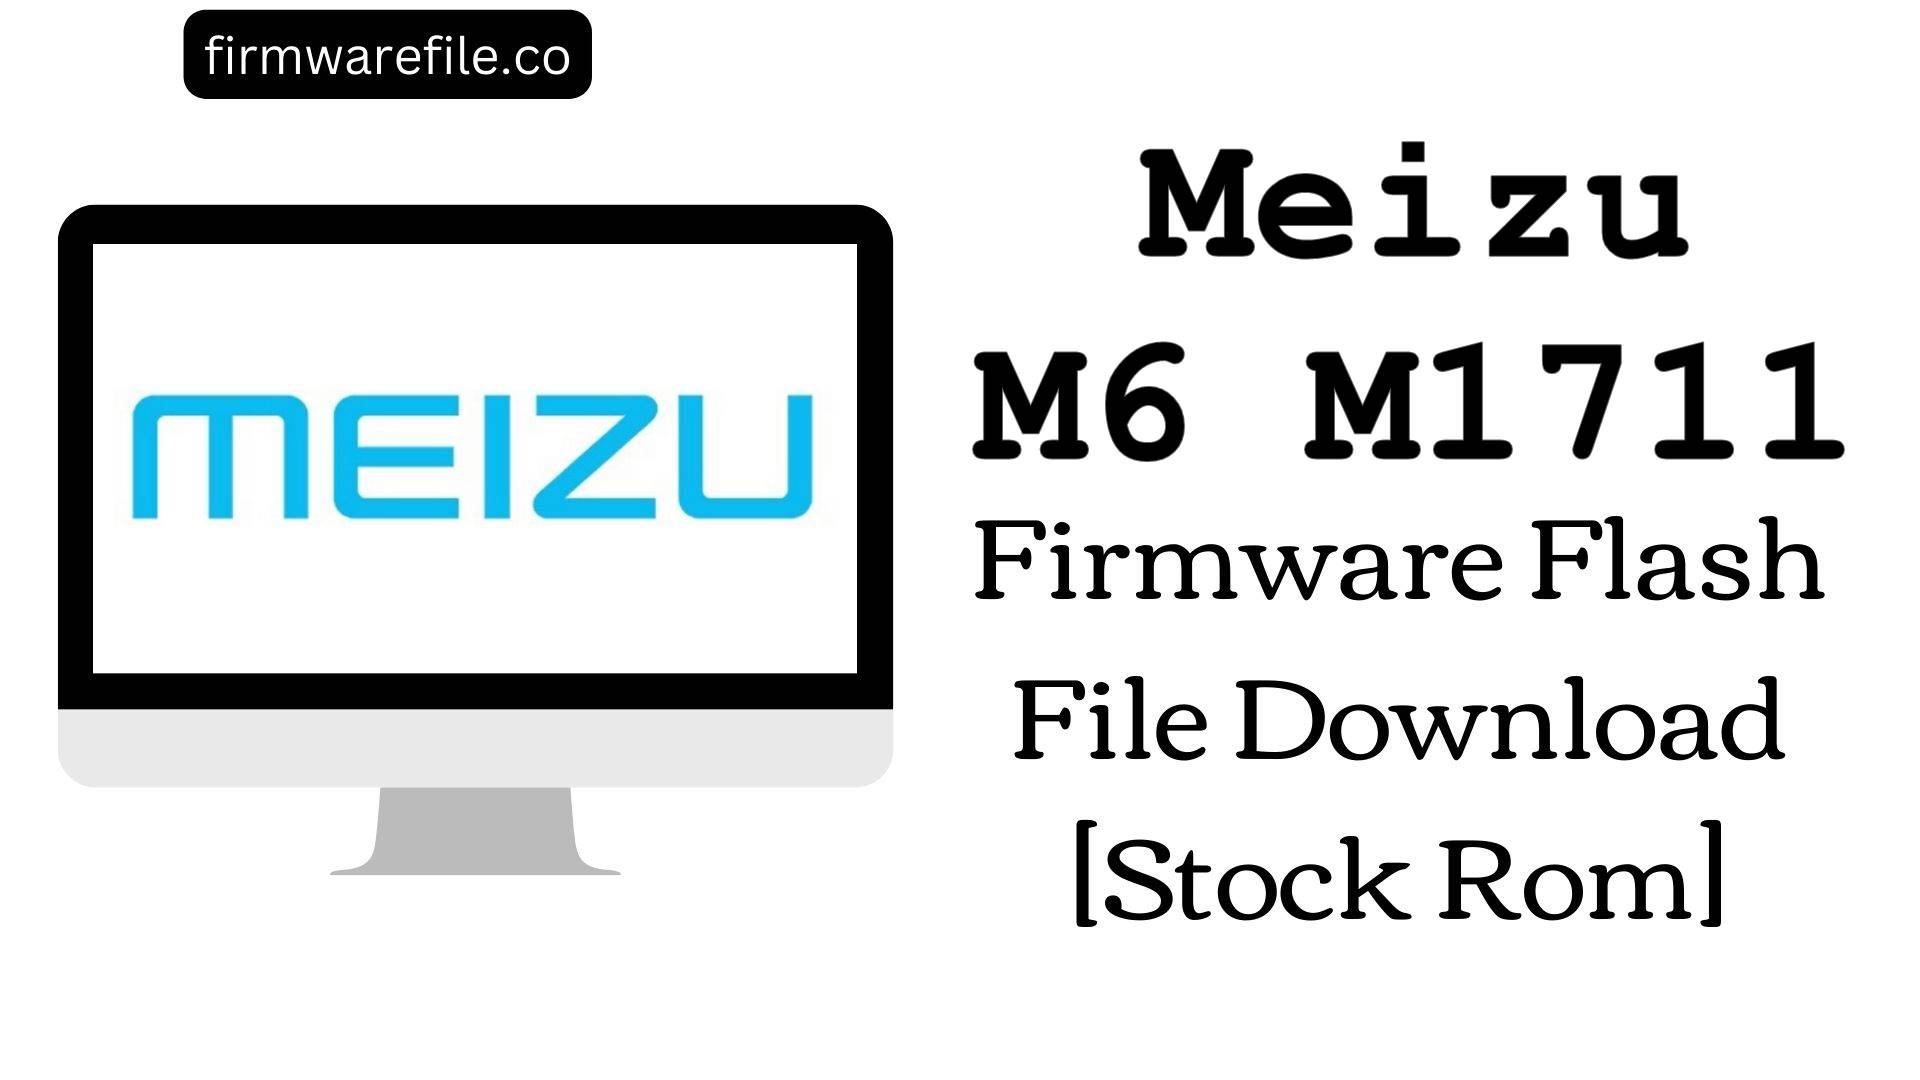 Meizu M6 M1711